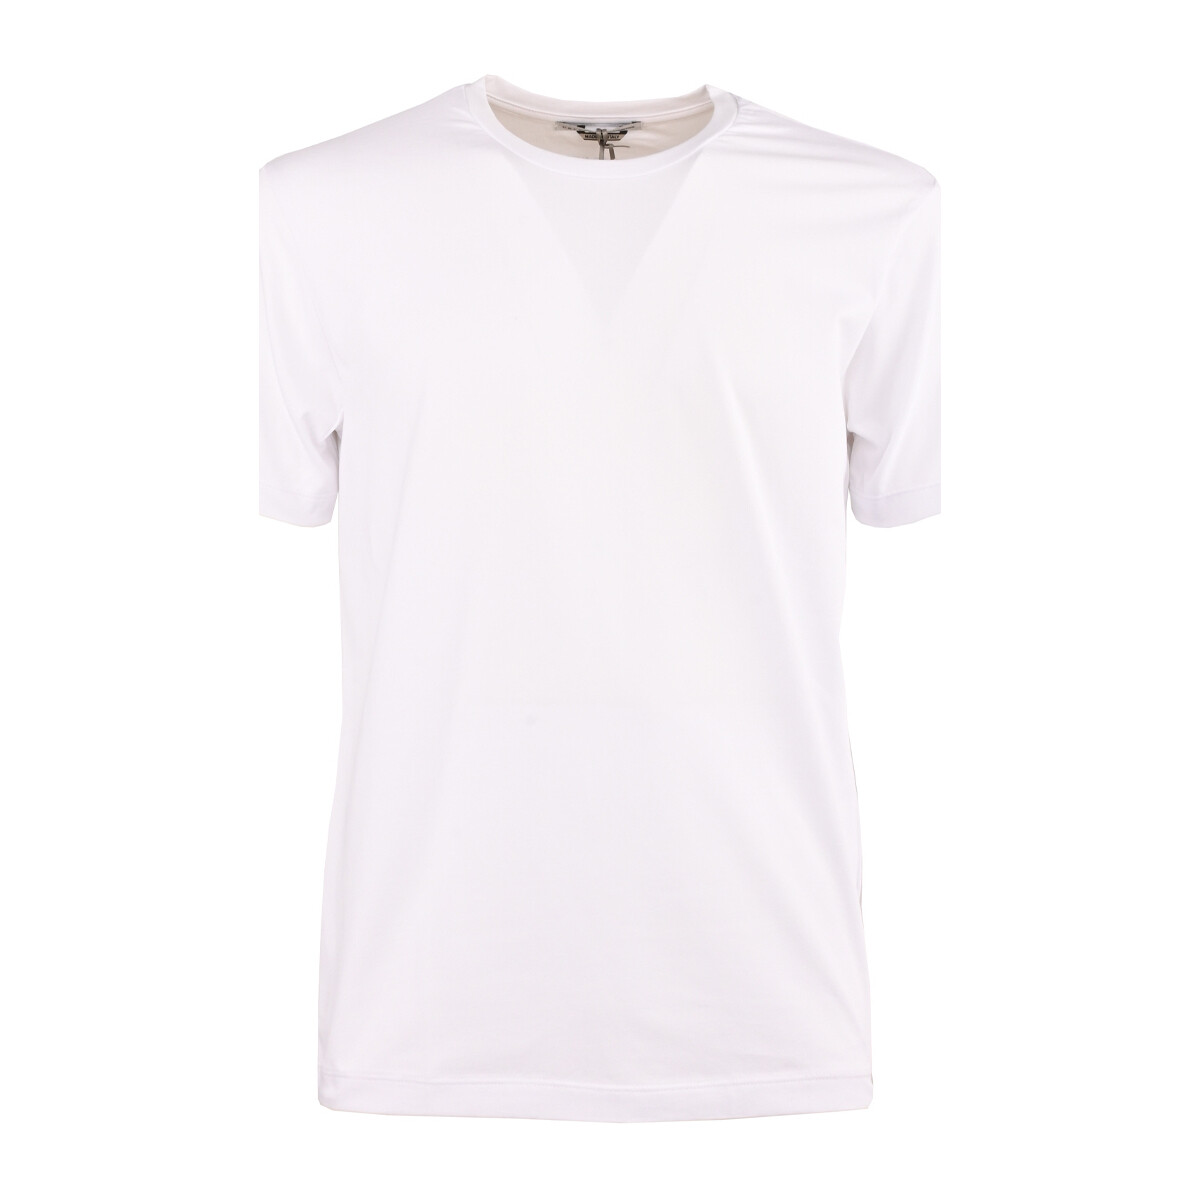 Vêtements Homme T-shirts manches courtes Daniele Alessandrini m9388a334300-2 Blanc